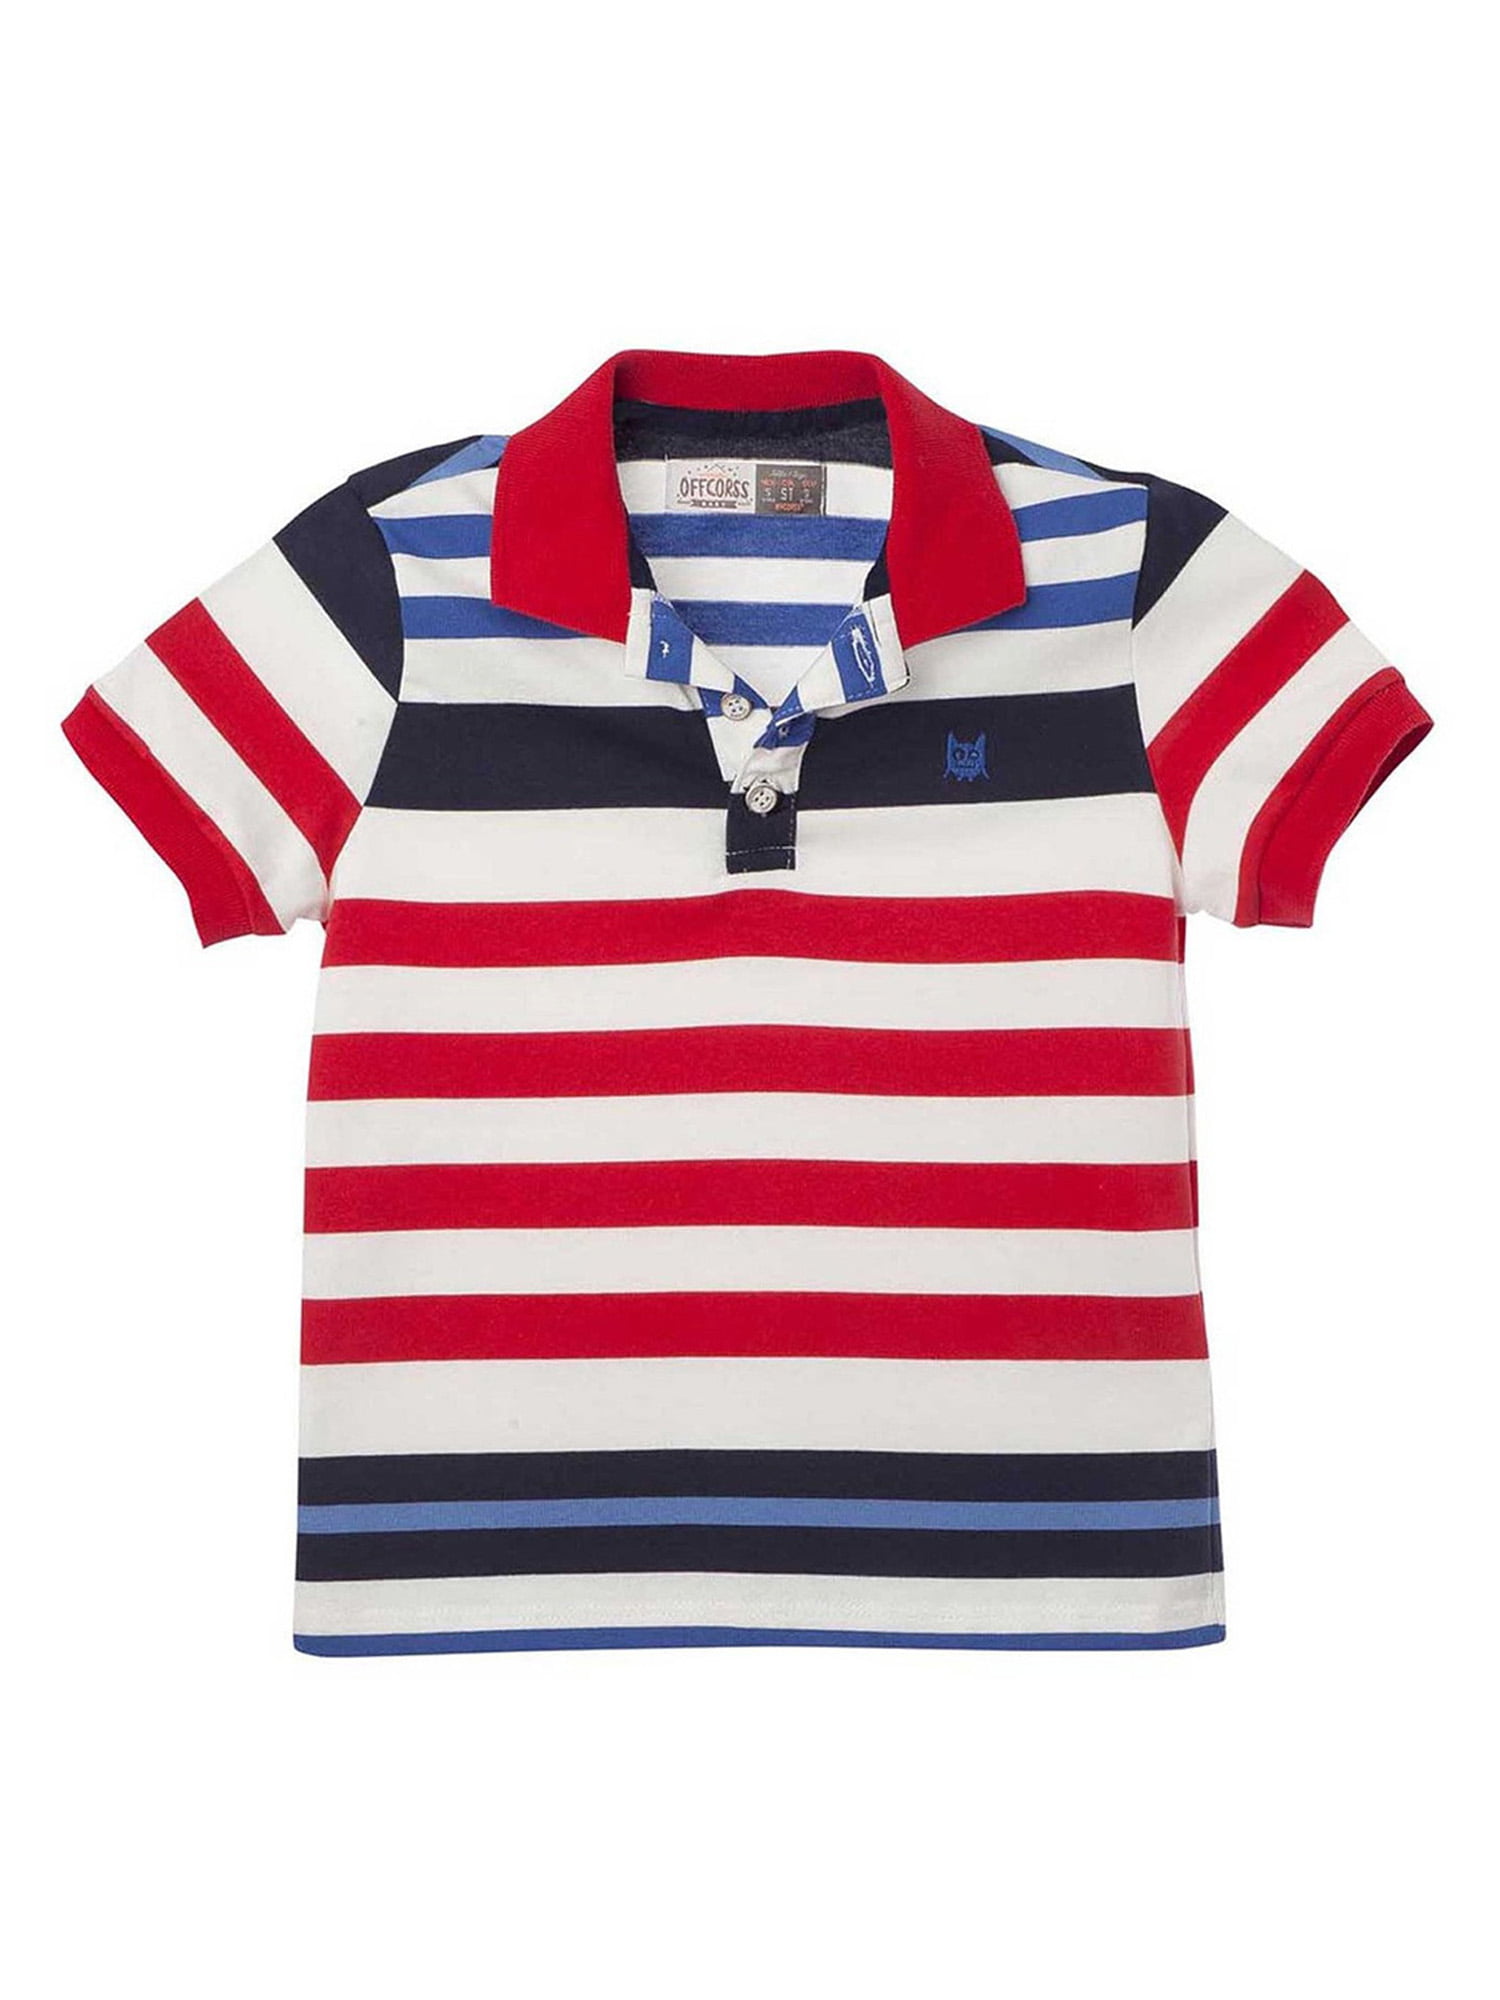 Offcorss - OFFCORSS Toddler Boy Cotton Polo T Shirt Camisa Camisetas ...